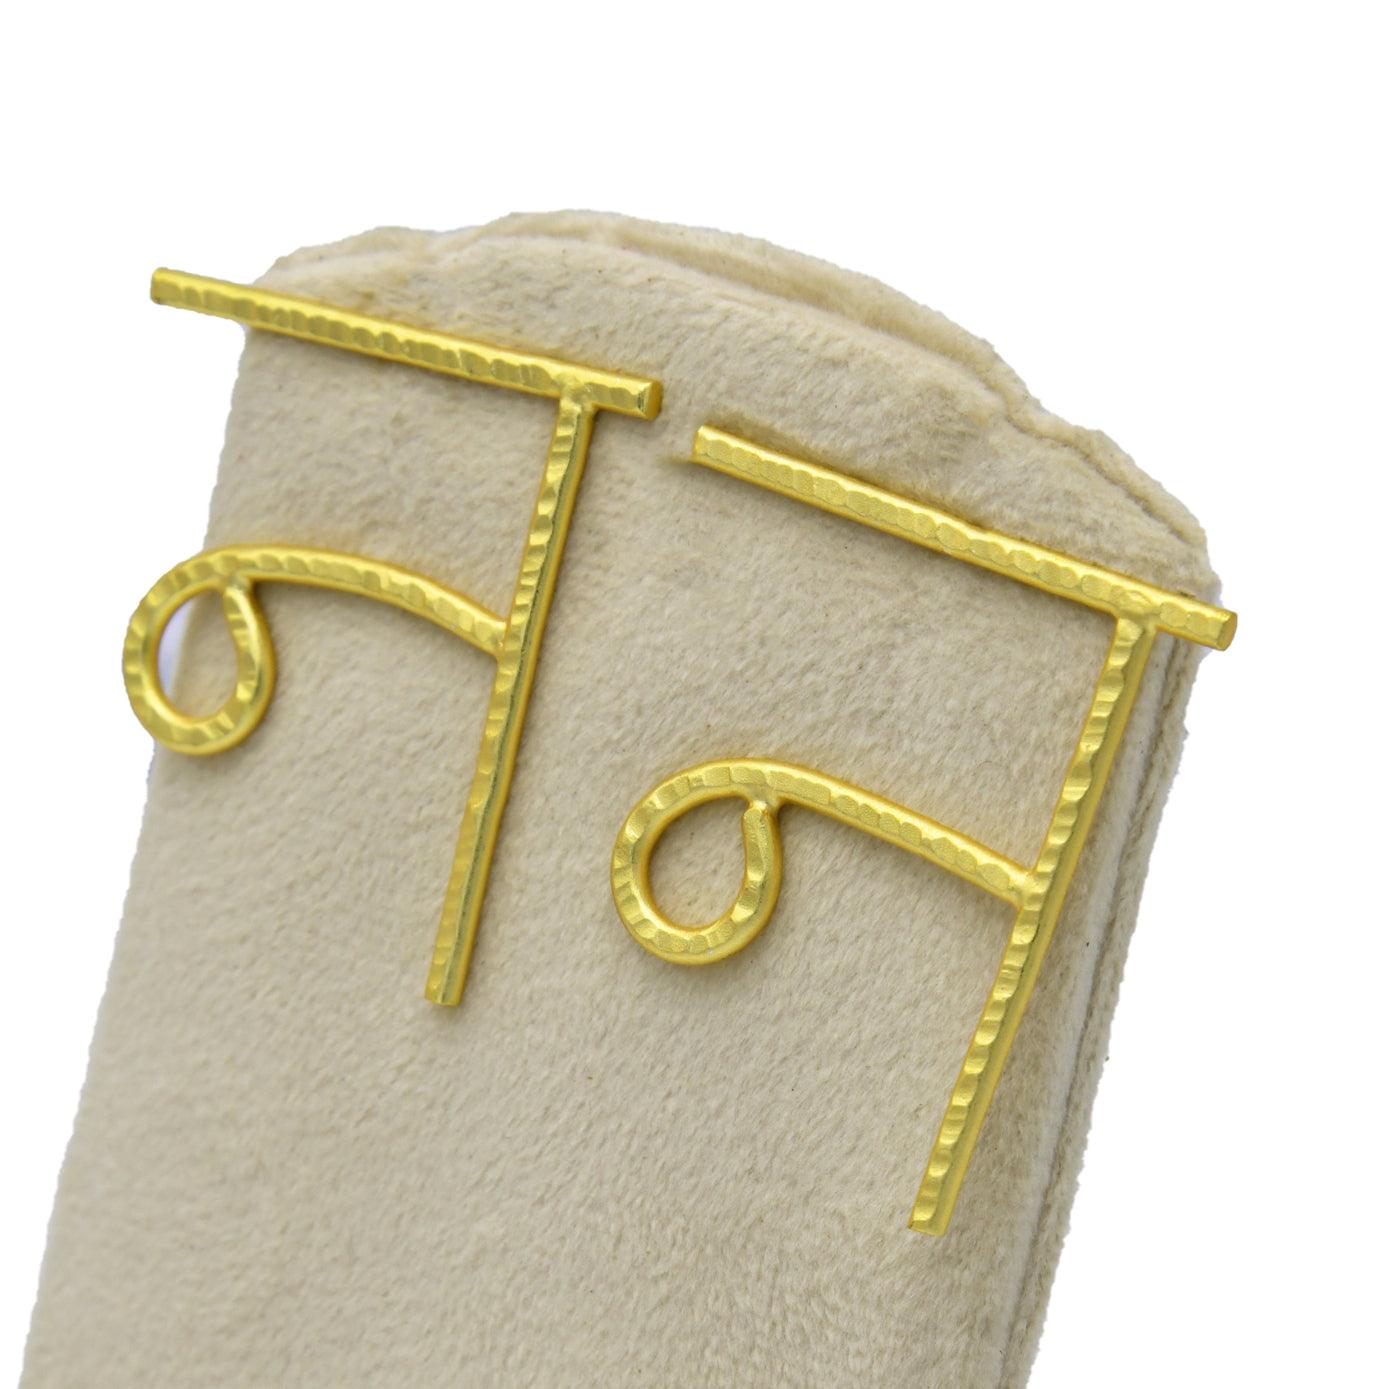 Hindi Alphabet "NA" Brass Earring - DeKulture DKW-1361-SEJ